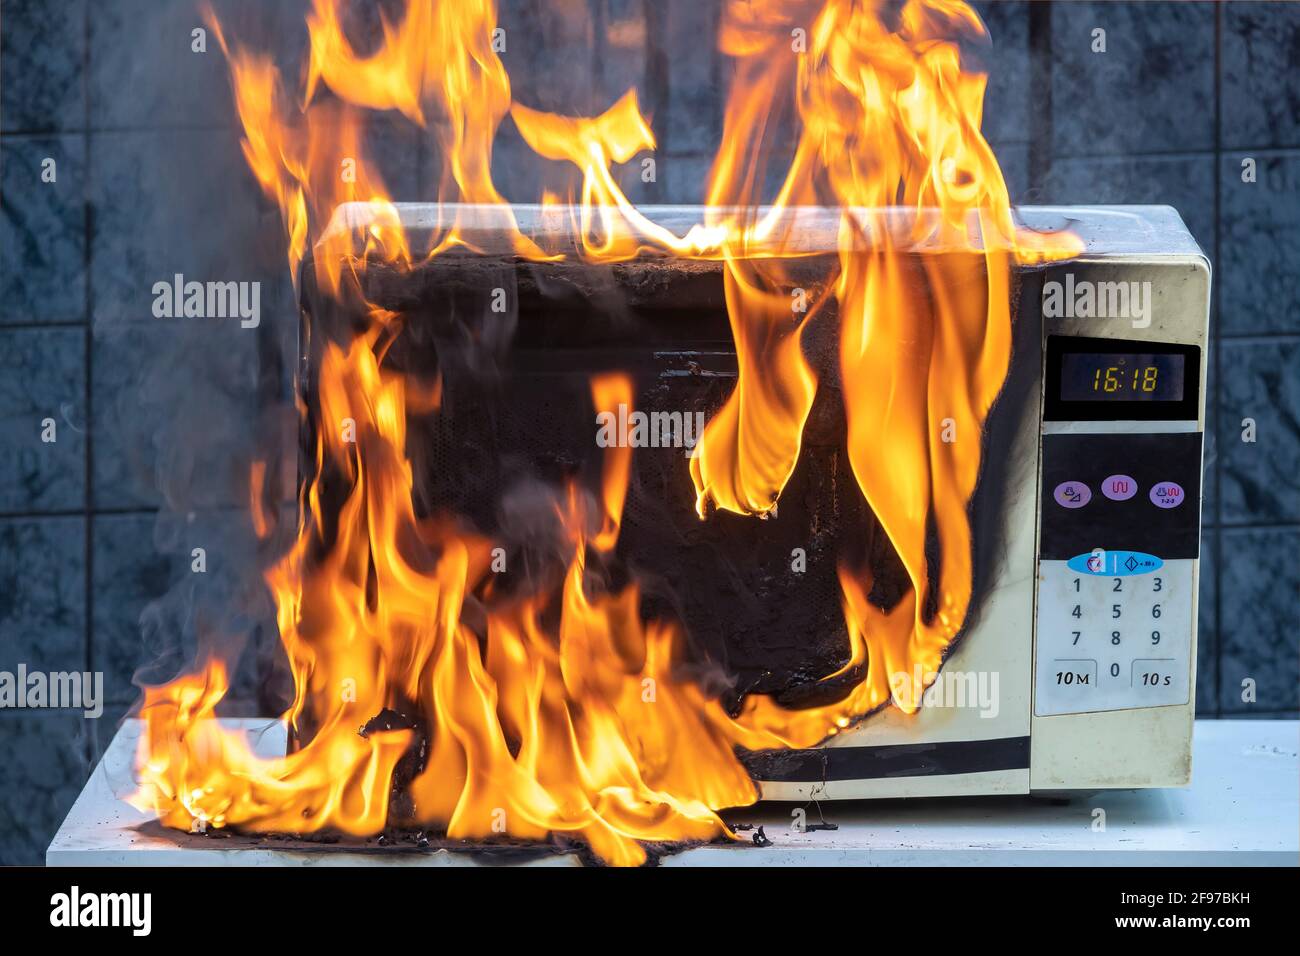 Die Mikrowelle hat sich aufgrund eines unsachgemäßen Betriebs entzündet  Stockfotografie - Alamy